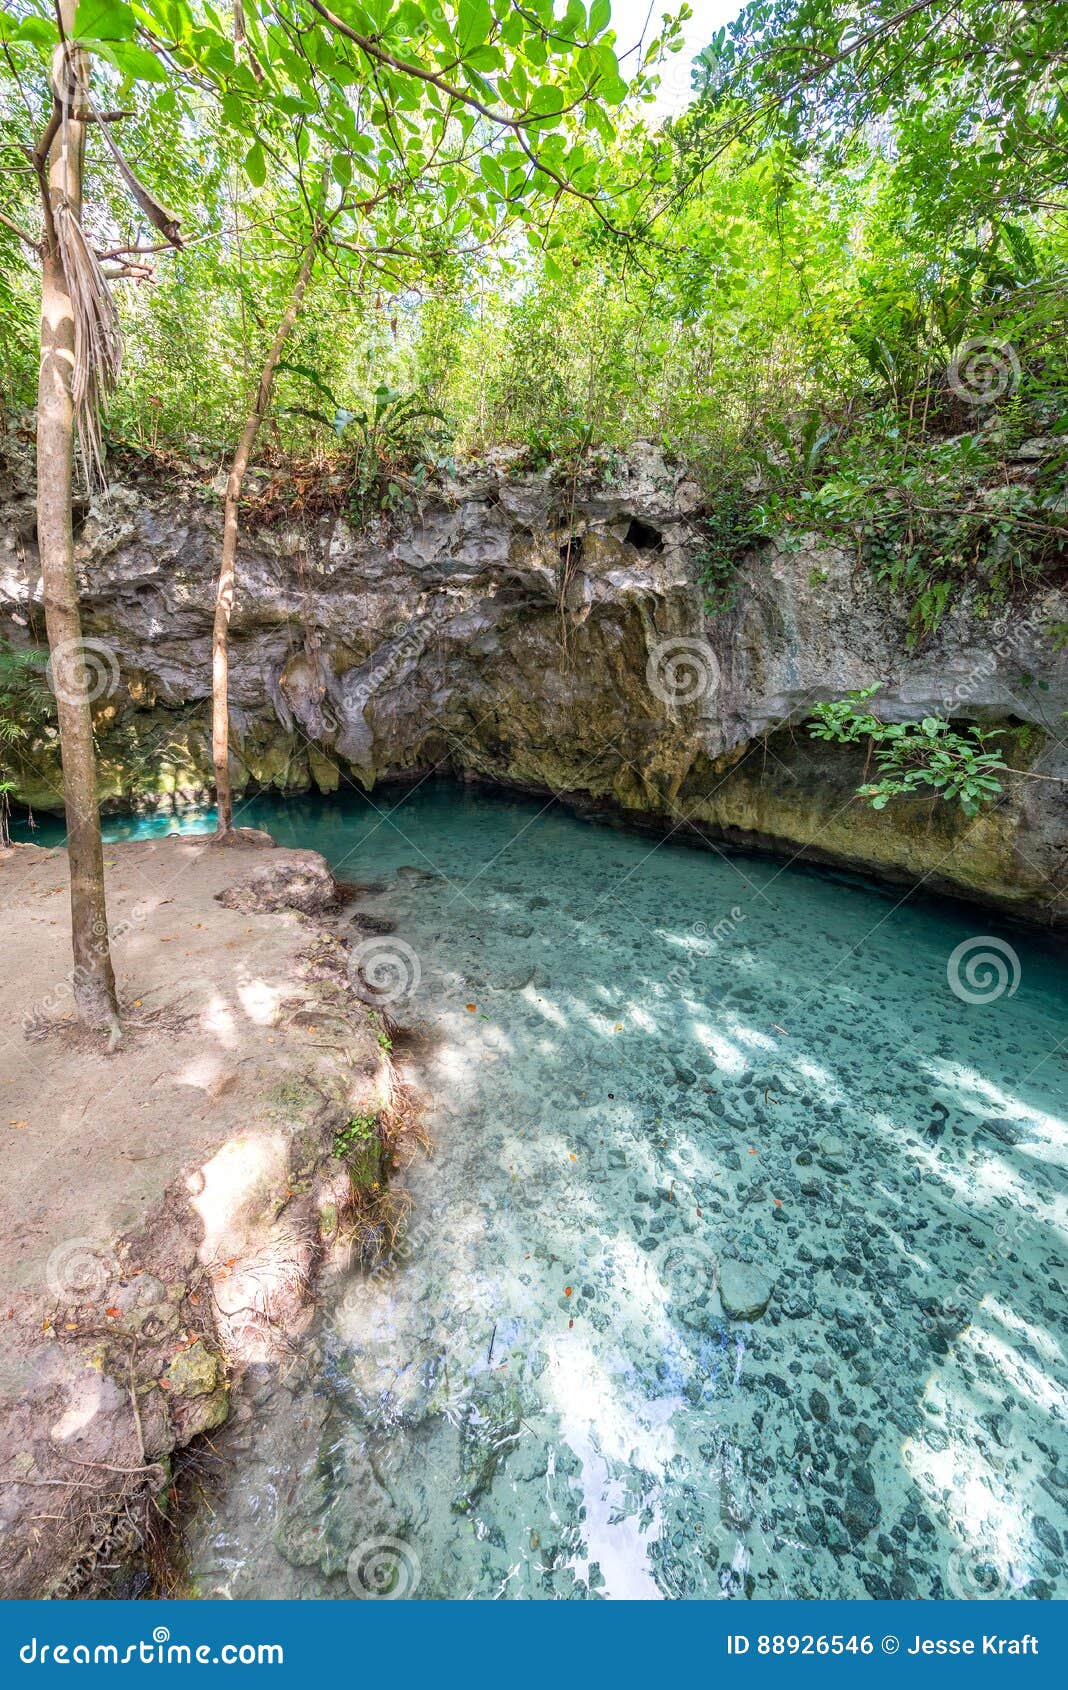 cenote near tulum, mexico